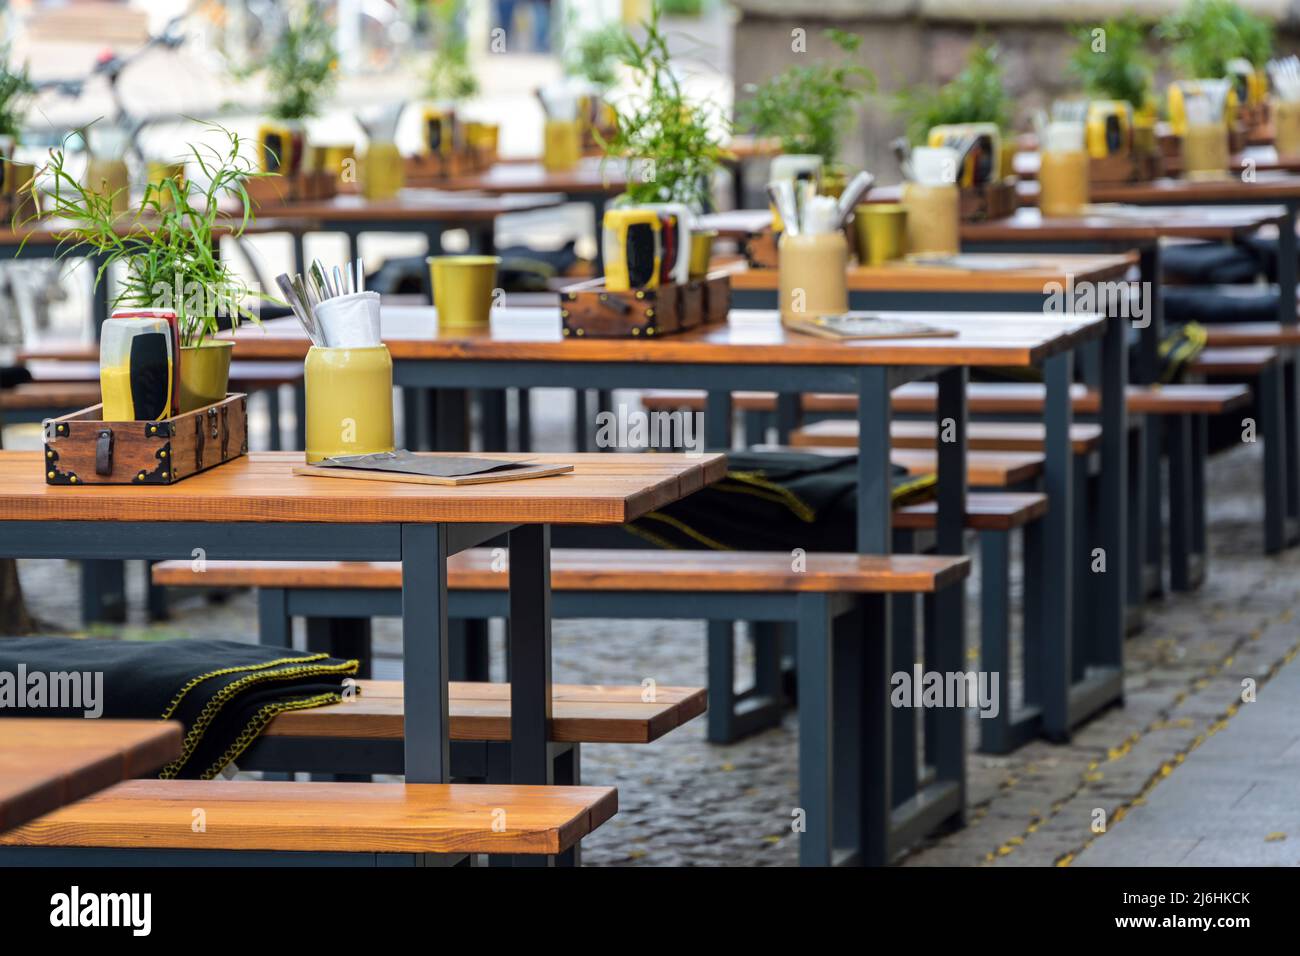 Holzbänke und gedeckte Tische in einem Straßenrestaurant im Stadtzentrum, städtische Outdoor-Gastronomie, ausgewählter Fokus, enge Schärfentiefe Stockfoto